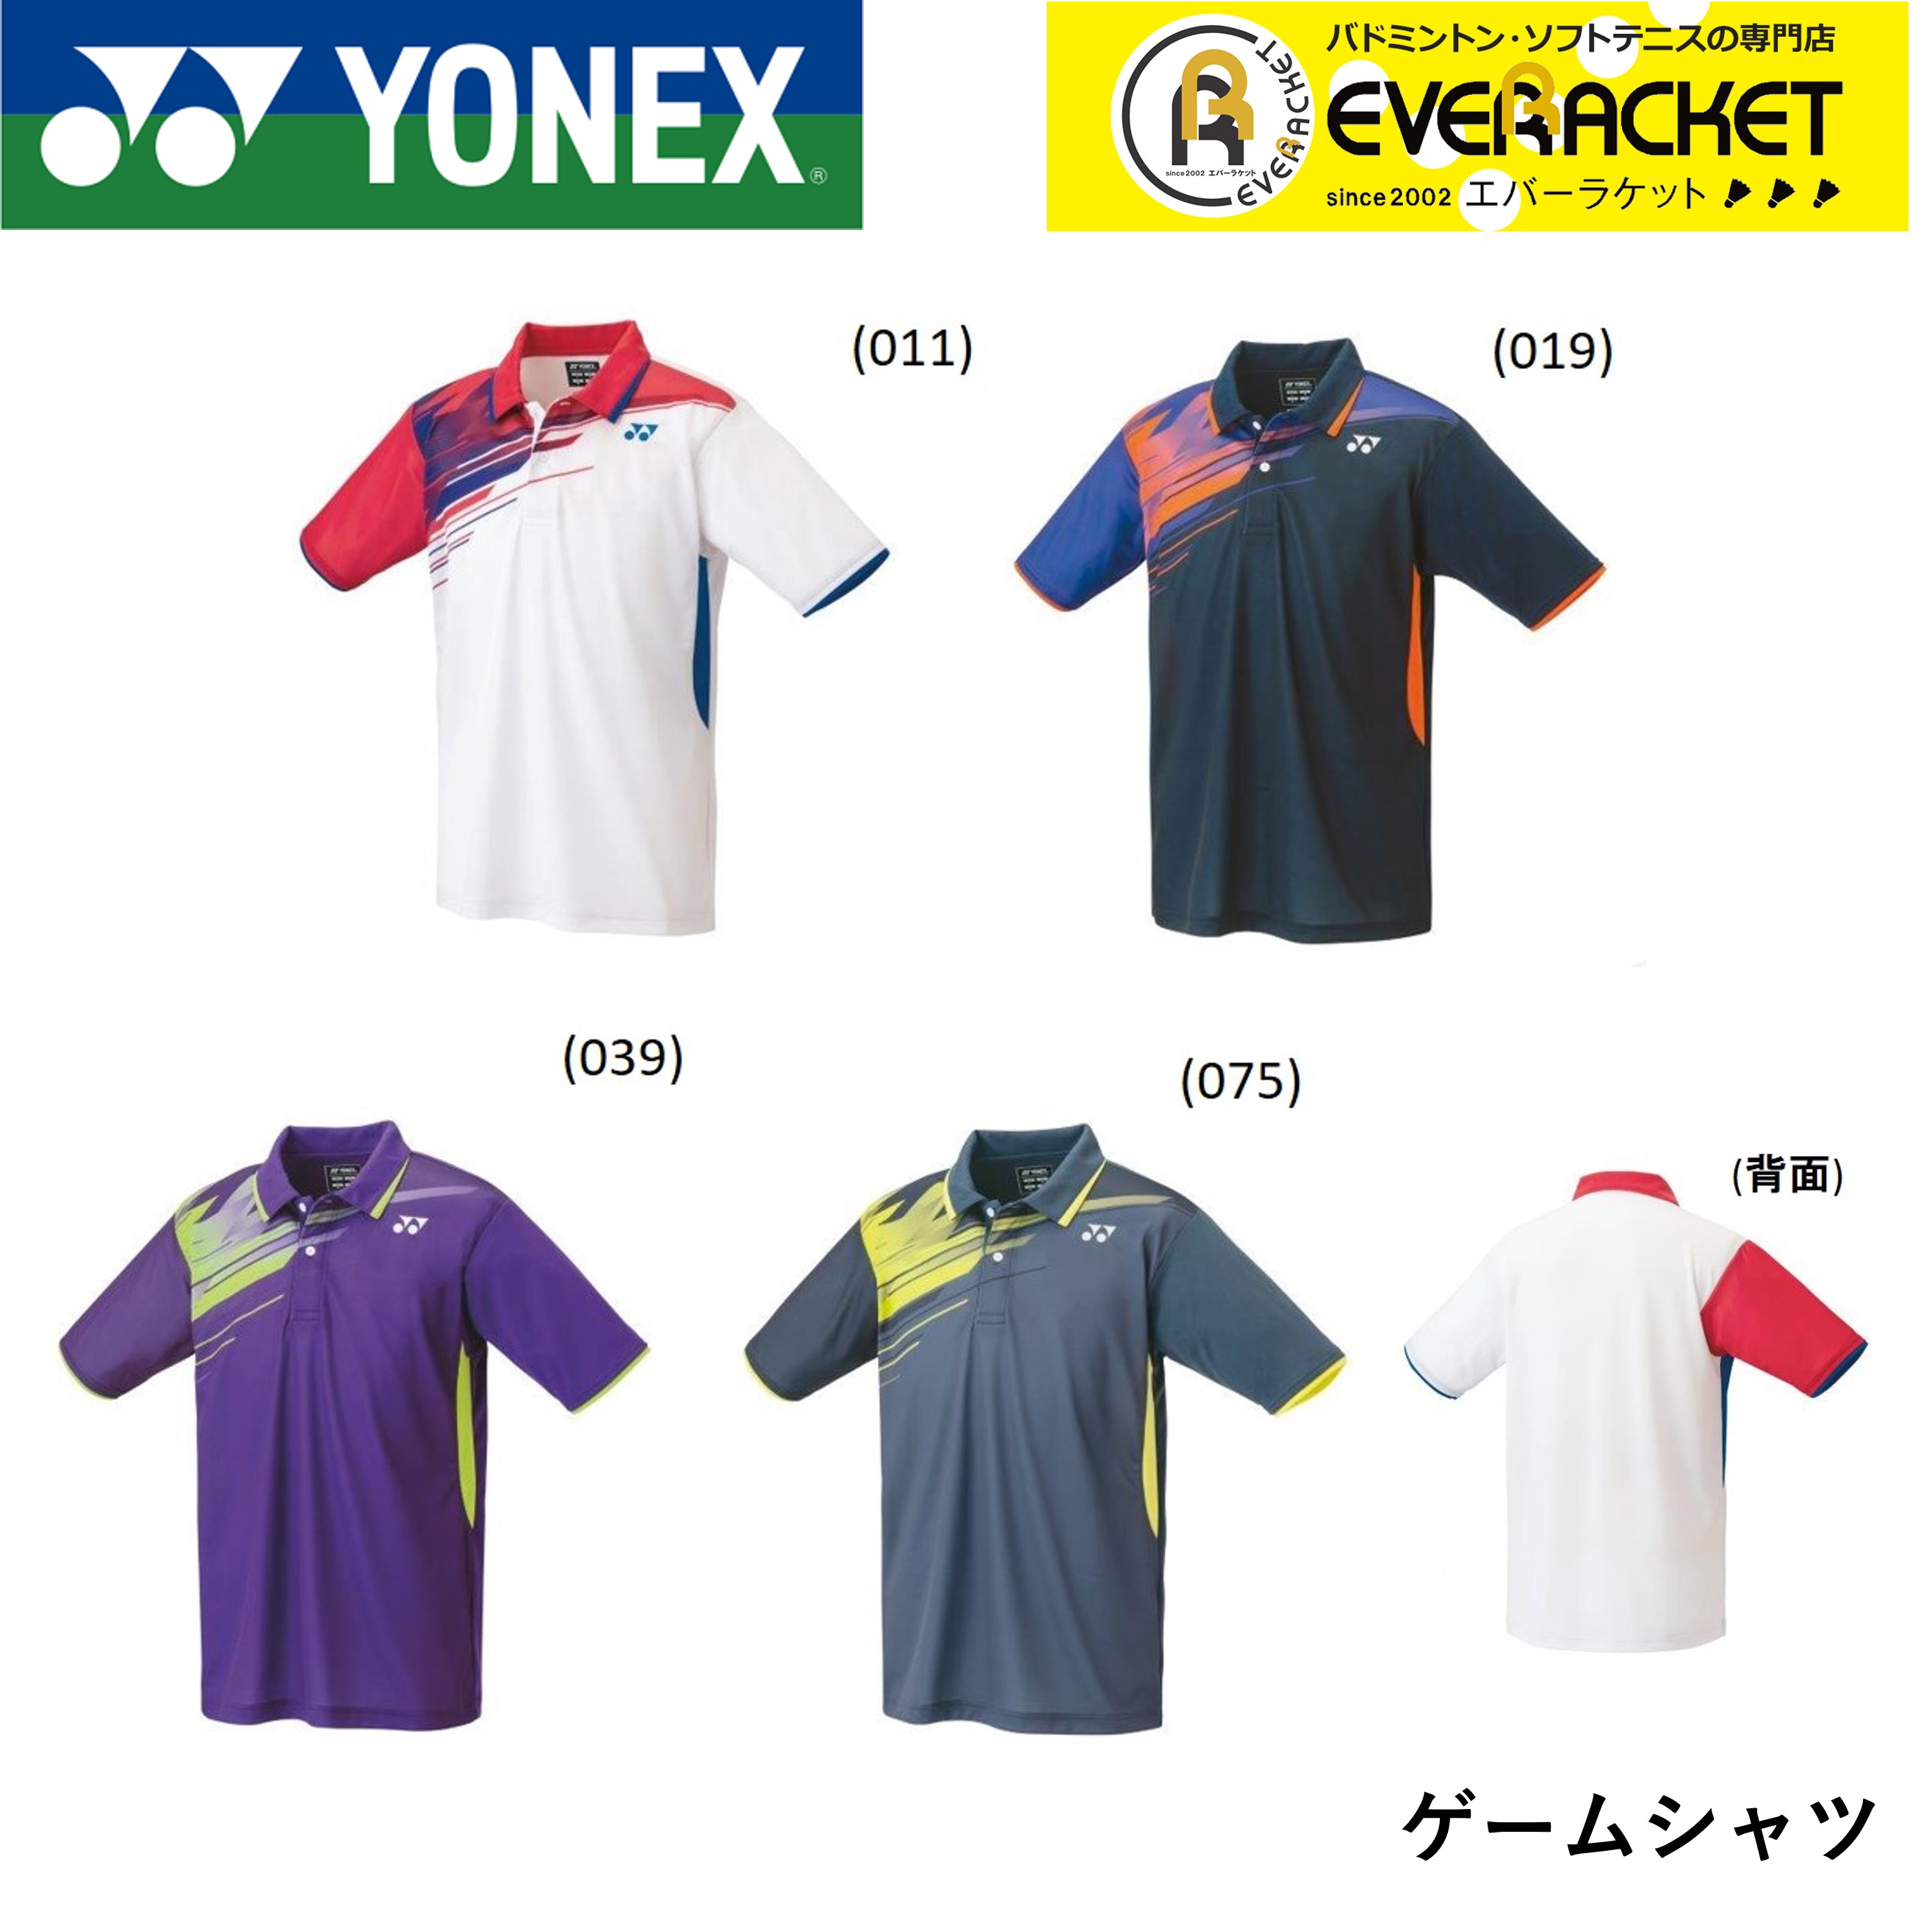 2021年 YONEX：ユニゲームシャツ 新品 ポスト投函送料無料 ヨネックス 安い YONEX 10429 テニス ウエア バドミントン ユニゲームシャツ